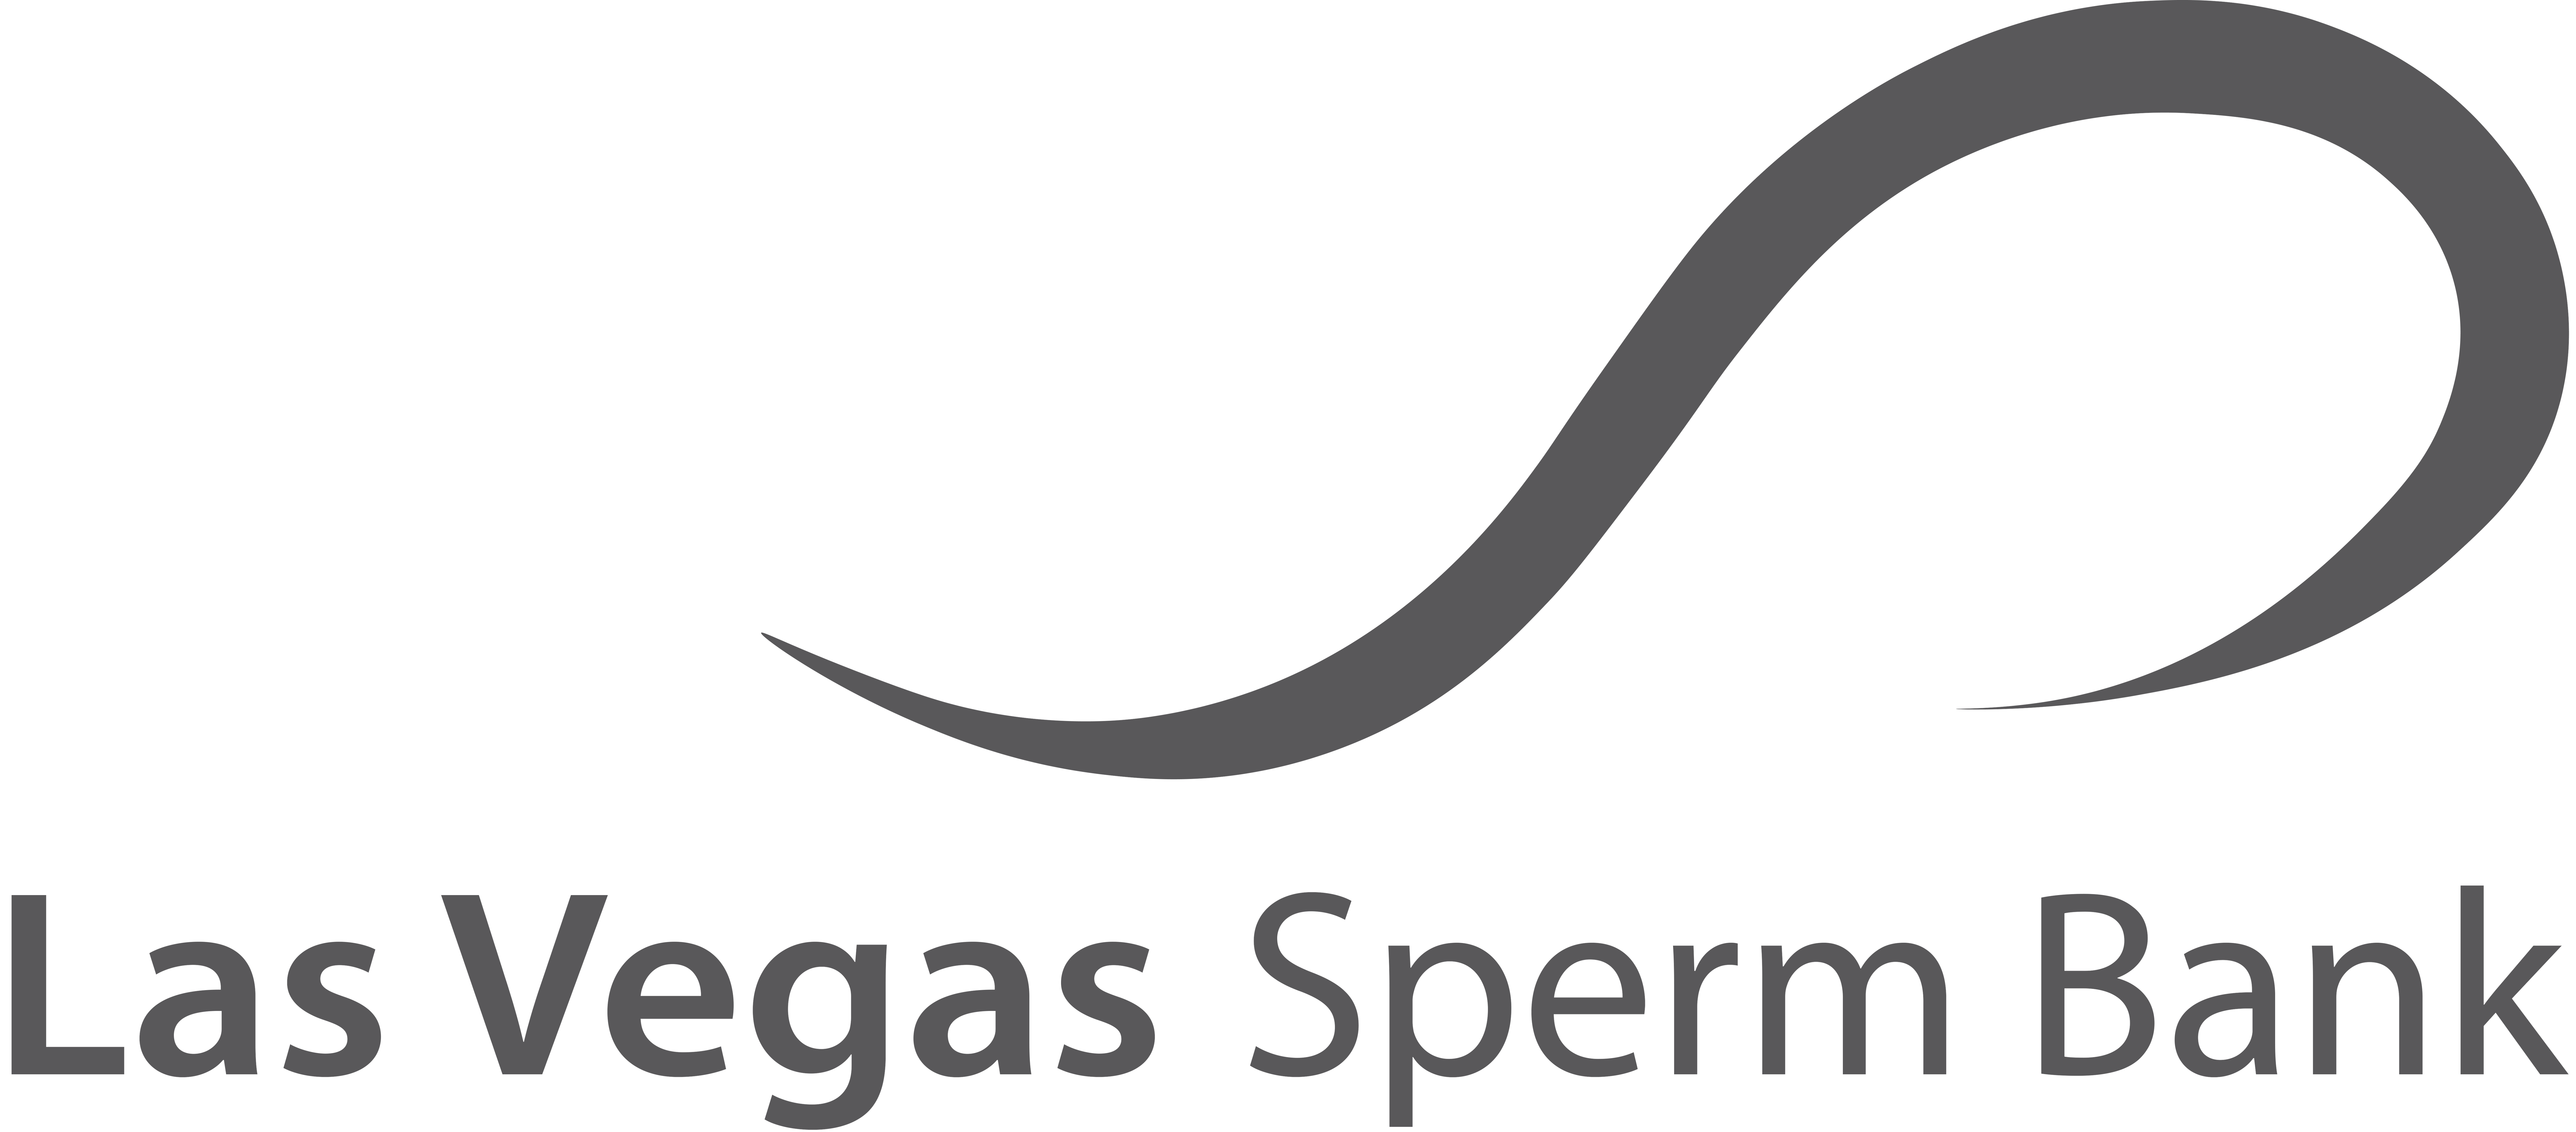 Las Vegas Sperm Bank